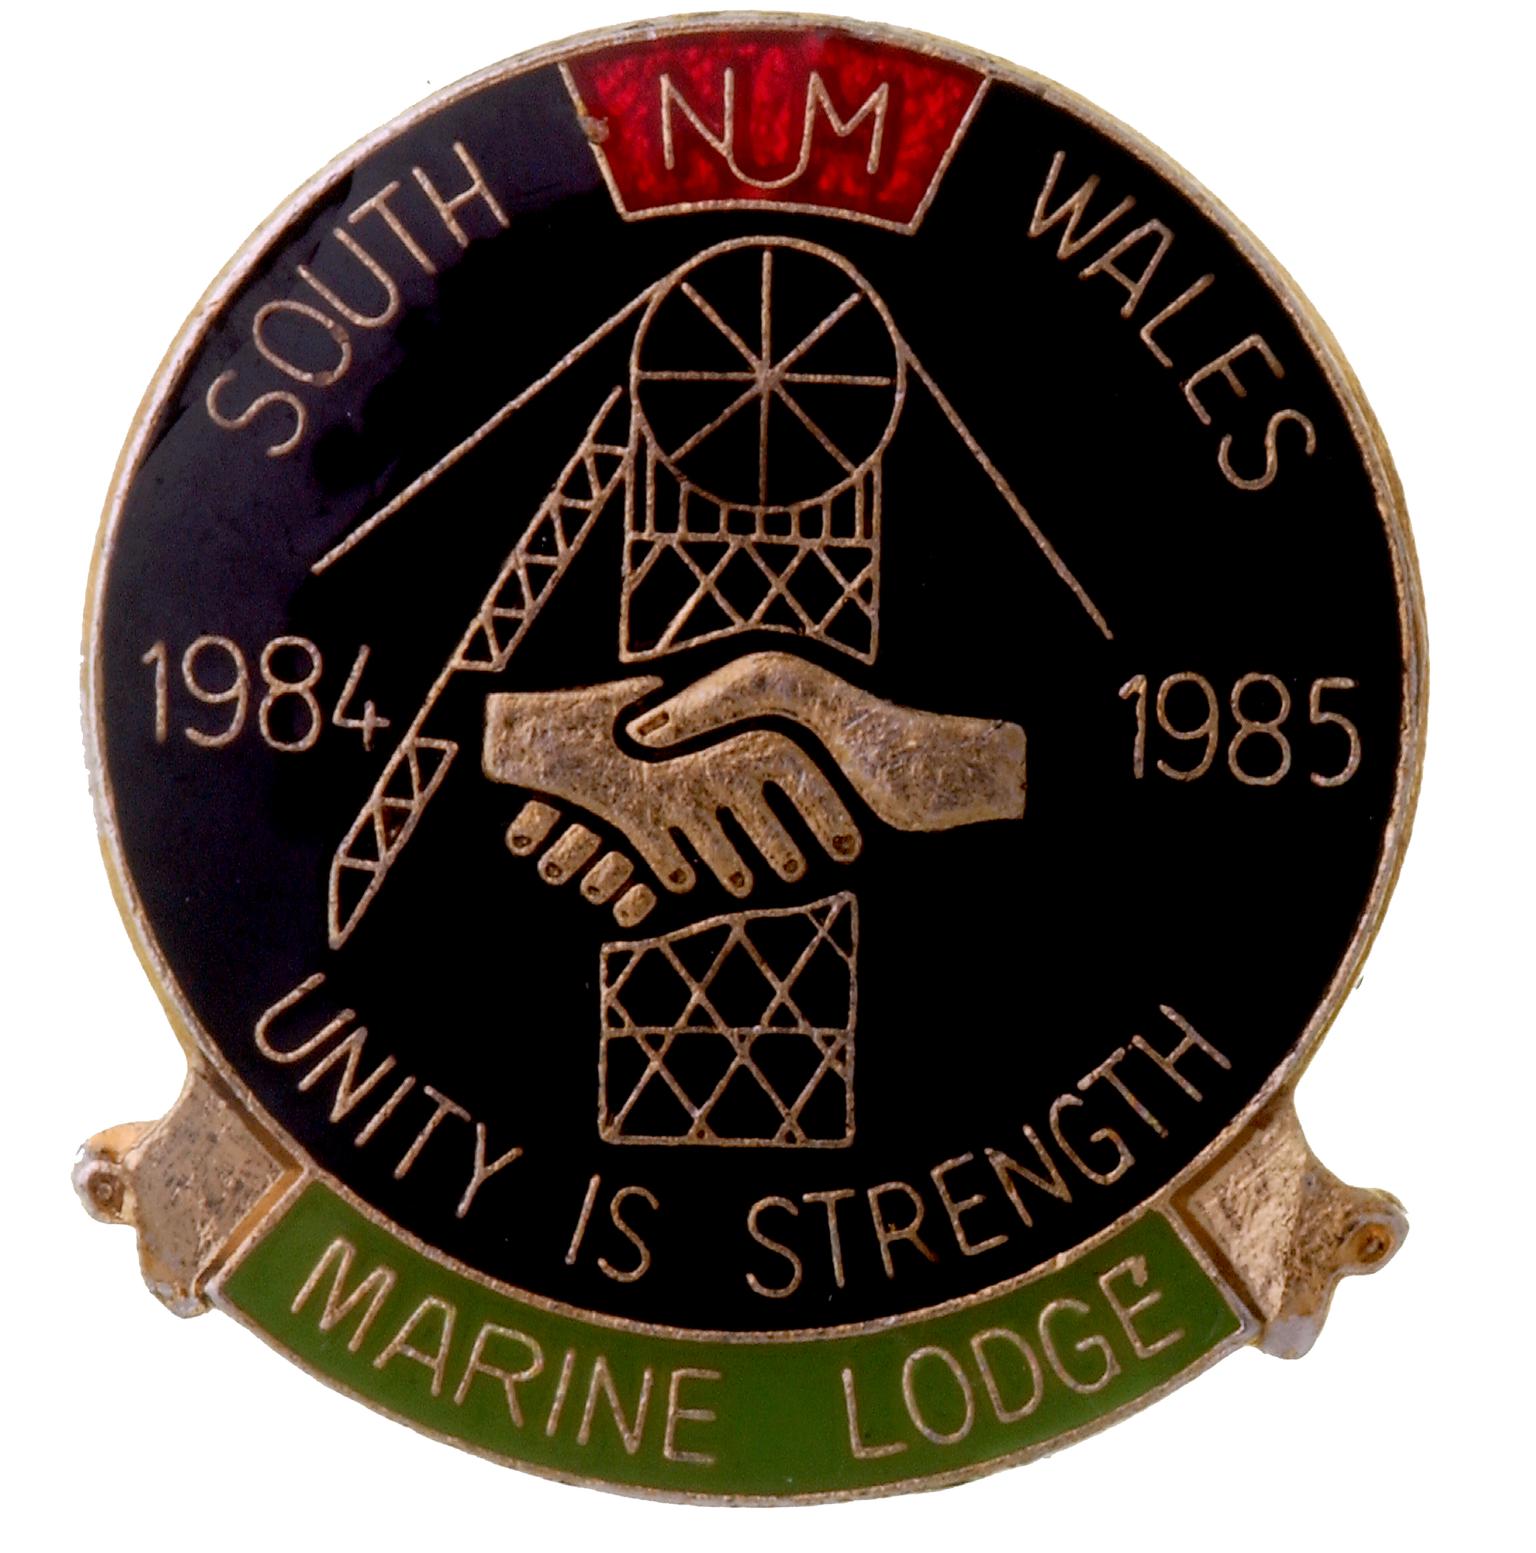 Marine Lodge, strike badge